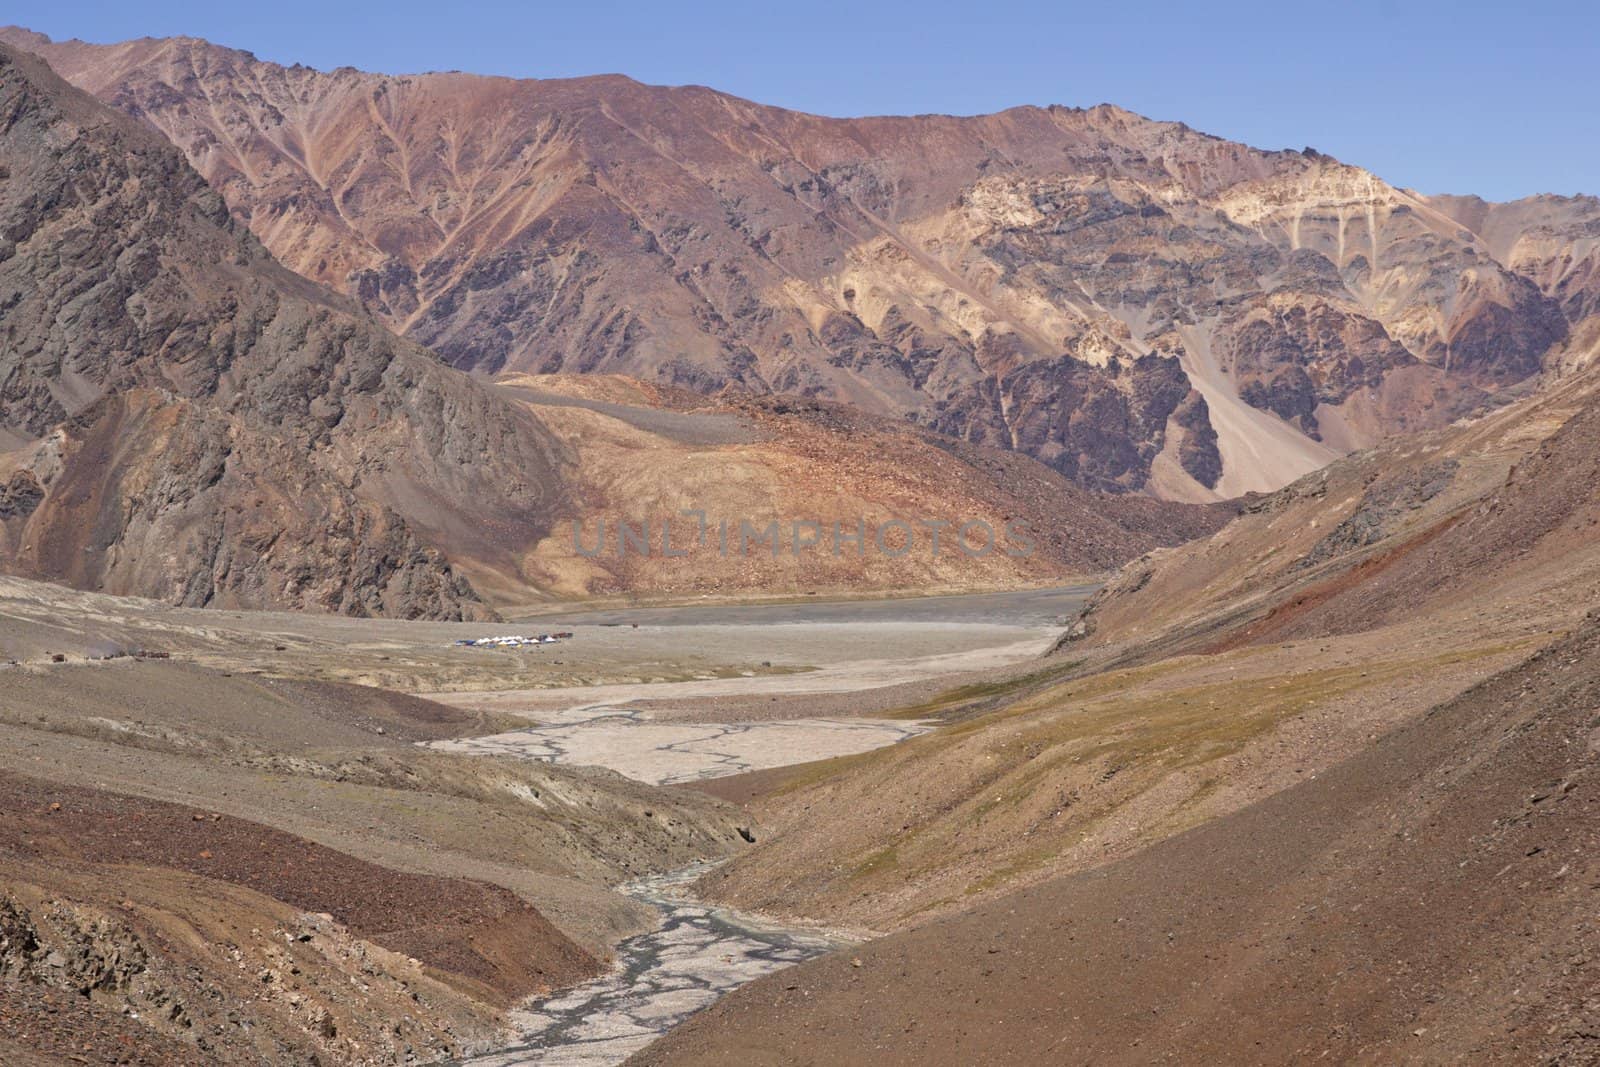 Arid Mountains of Ladakh by JeremyRichards